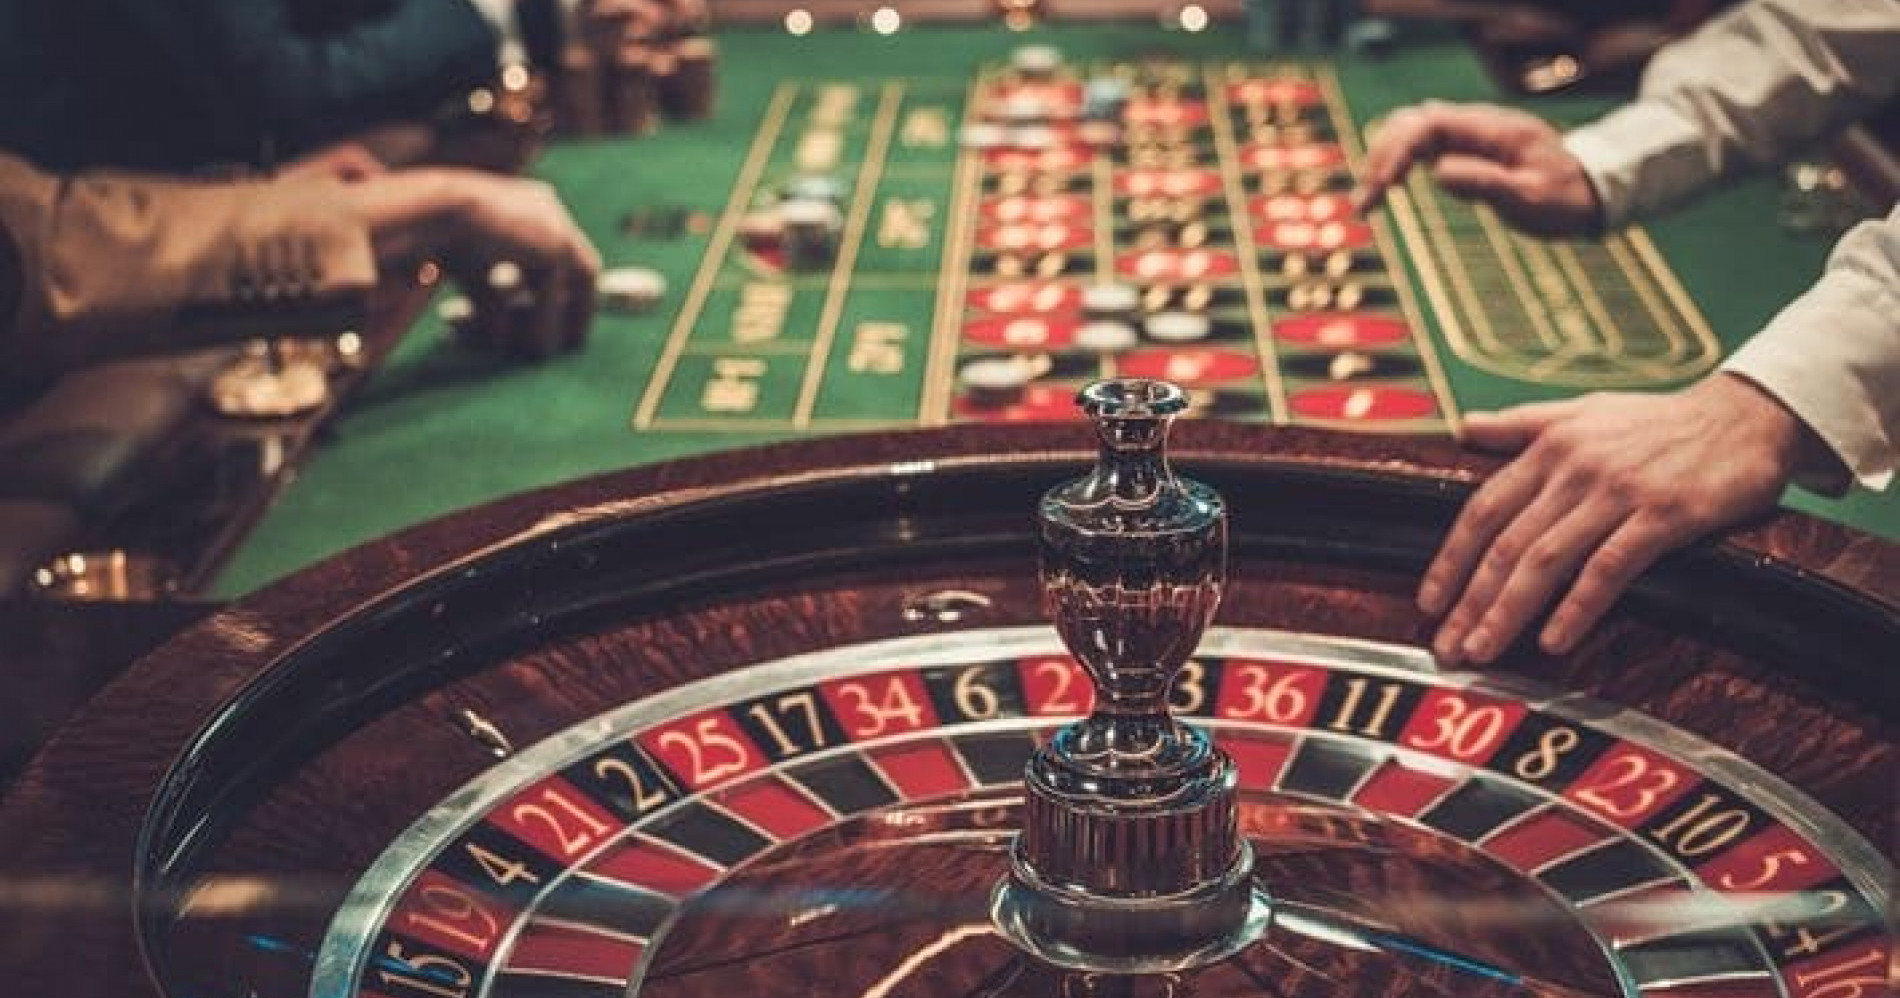 Thailand akan legalkan bisnis kasino untuk dongkrak ekonomi negara (Sumber gambar: Pinterest)